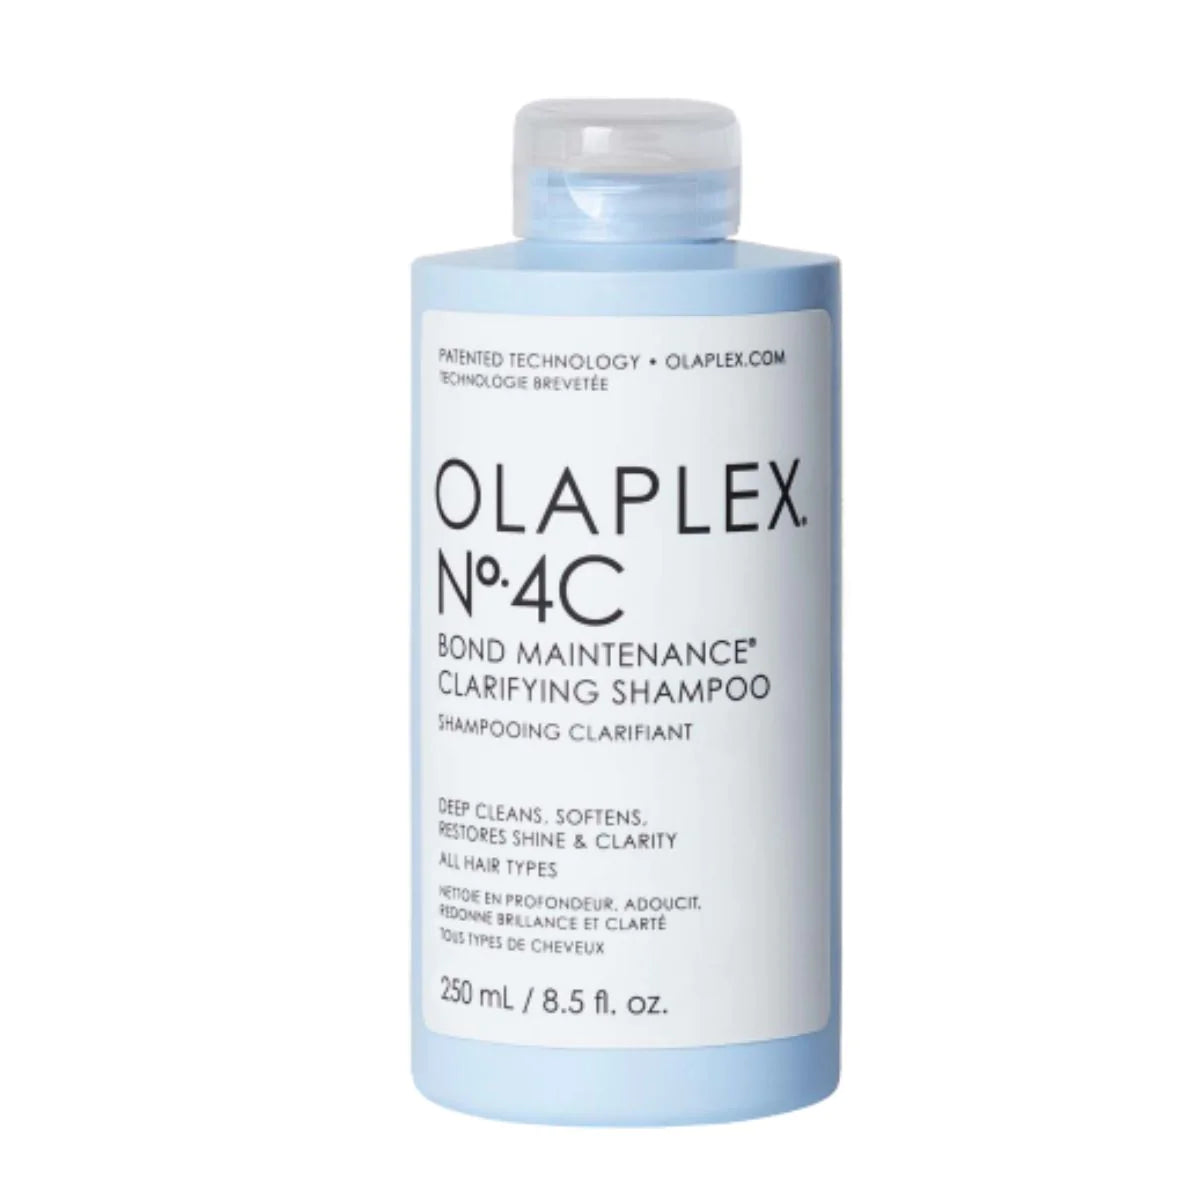 Olaplex No.4C